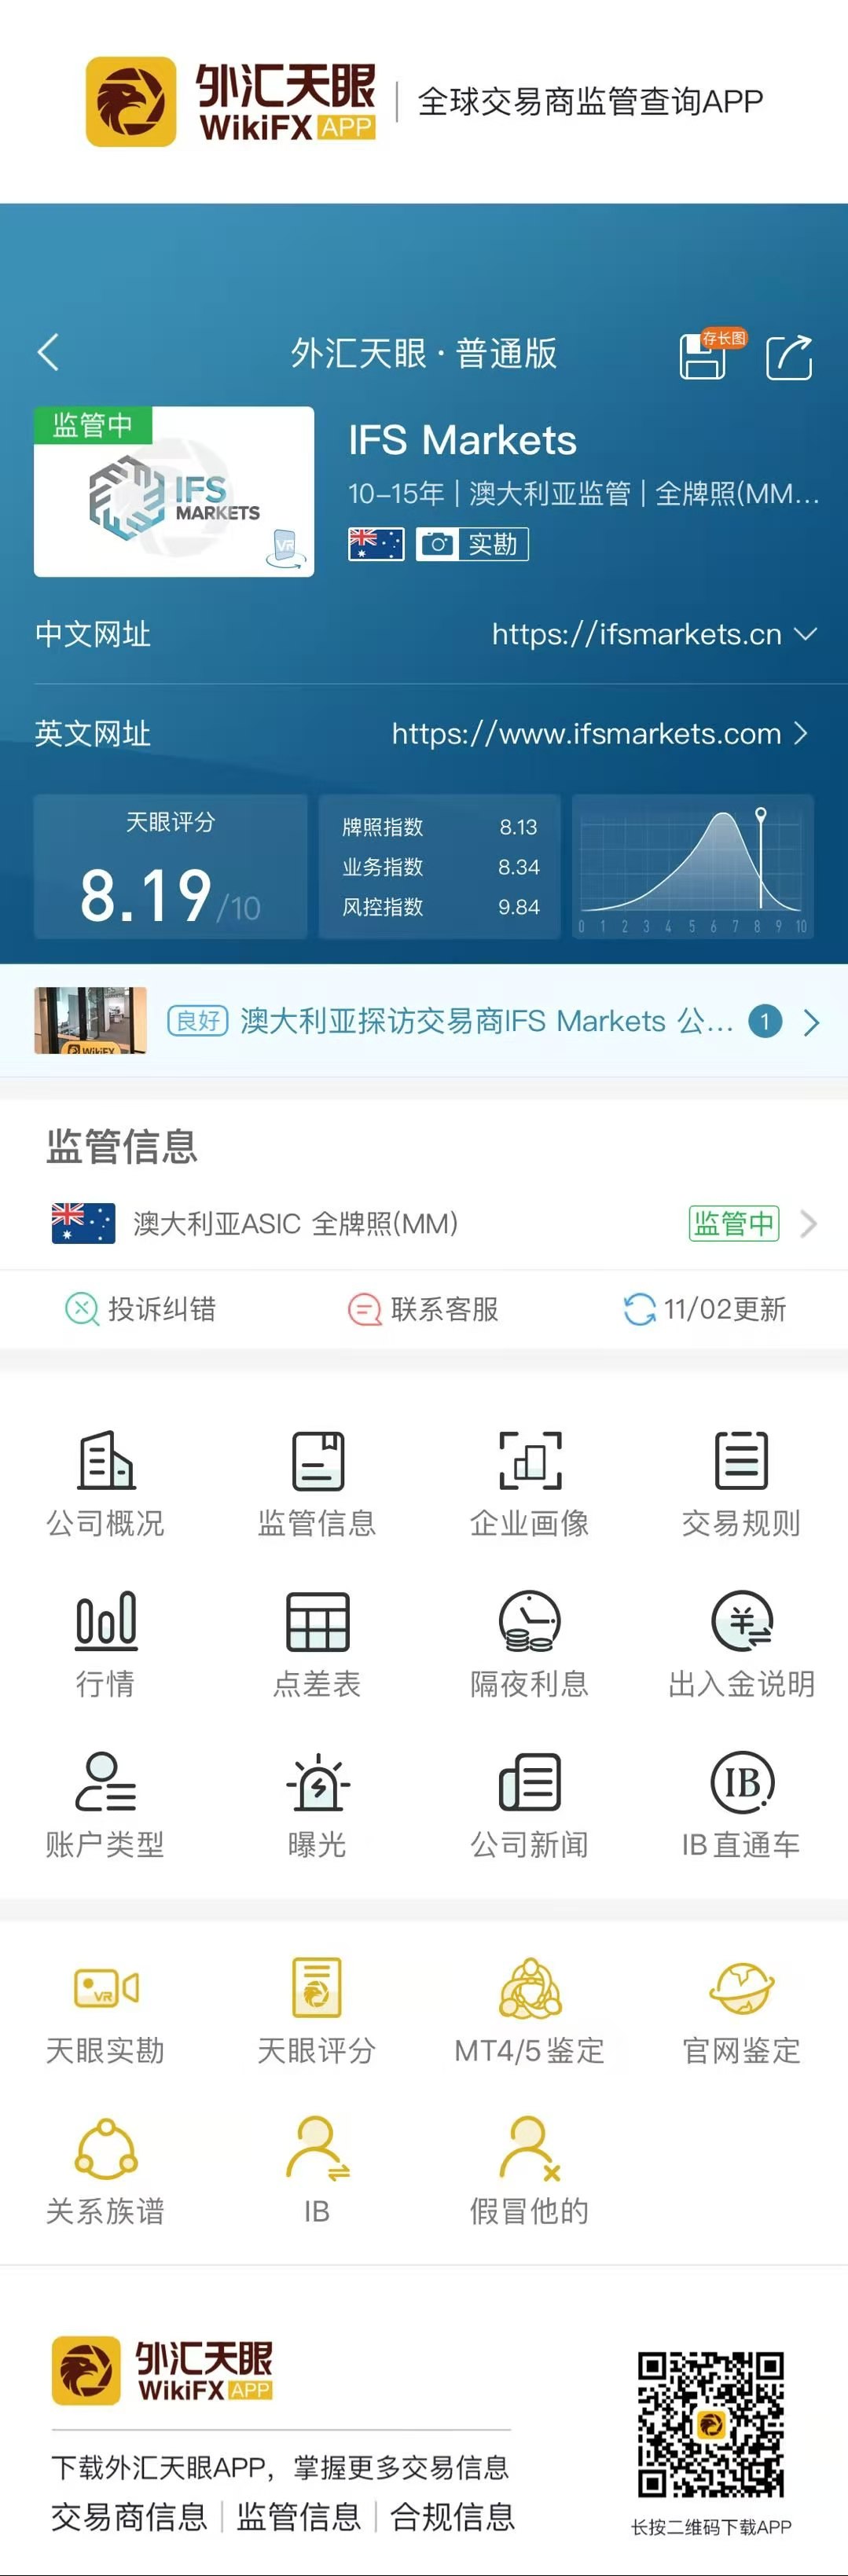 深圳IFSForeign exchange platform investment agency gold50return35216 / author:wallstreetpigs / PostsID:1583921